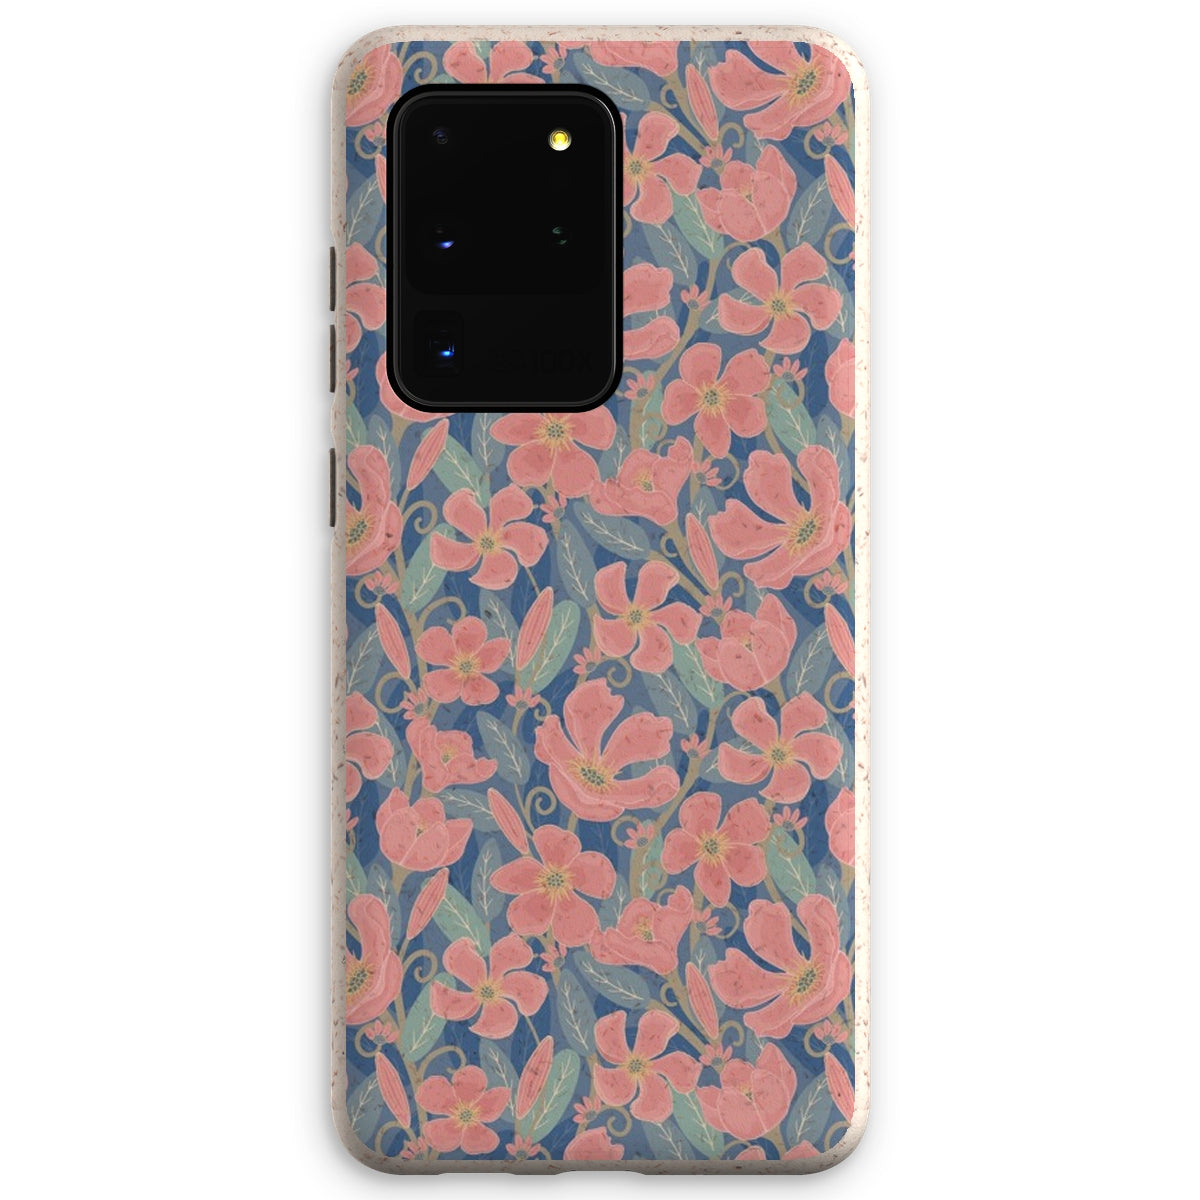 Oleander Floral Eco Phone Case - Pink & Blue